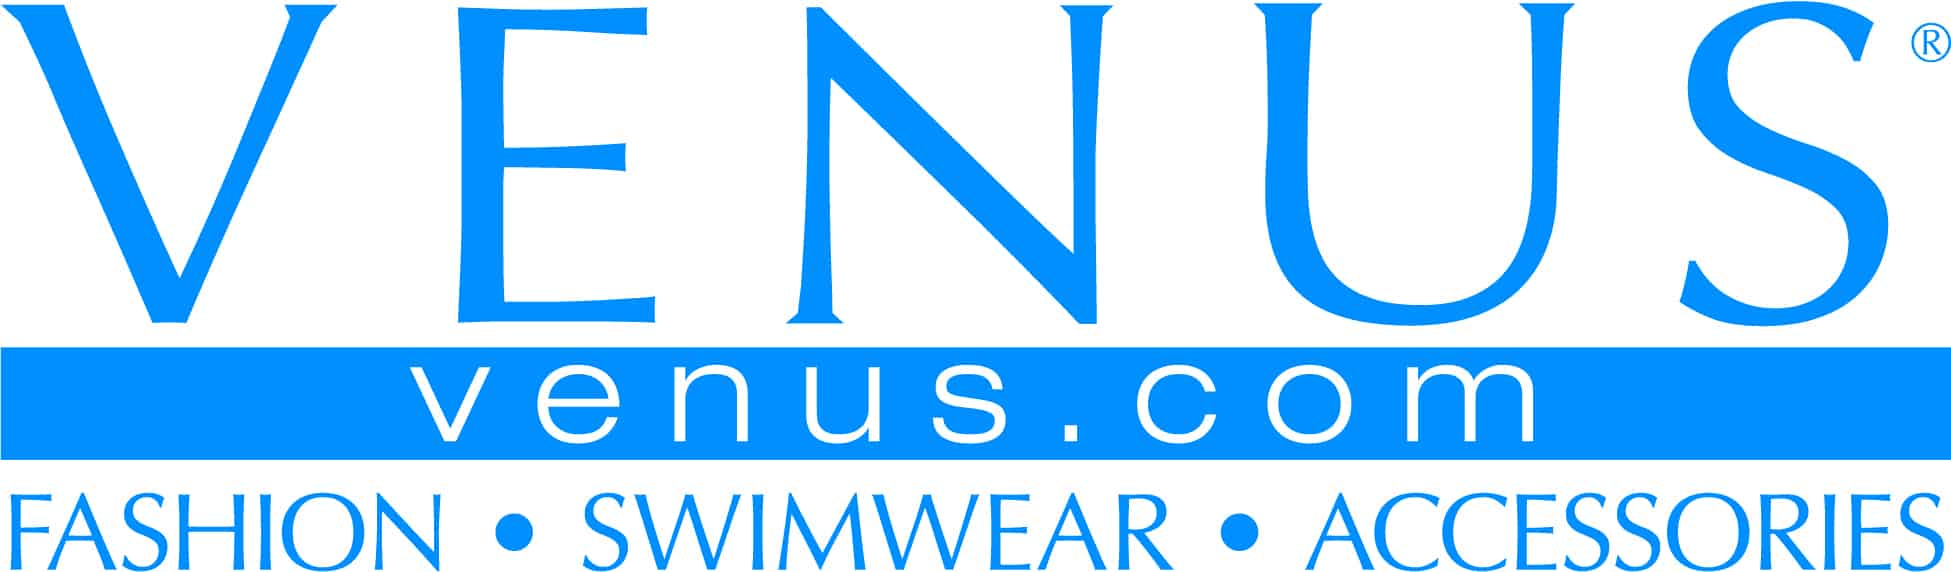 VENUS logo